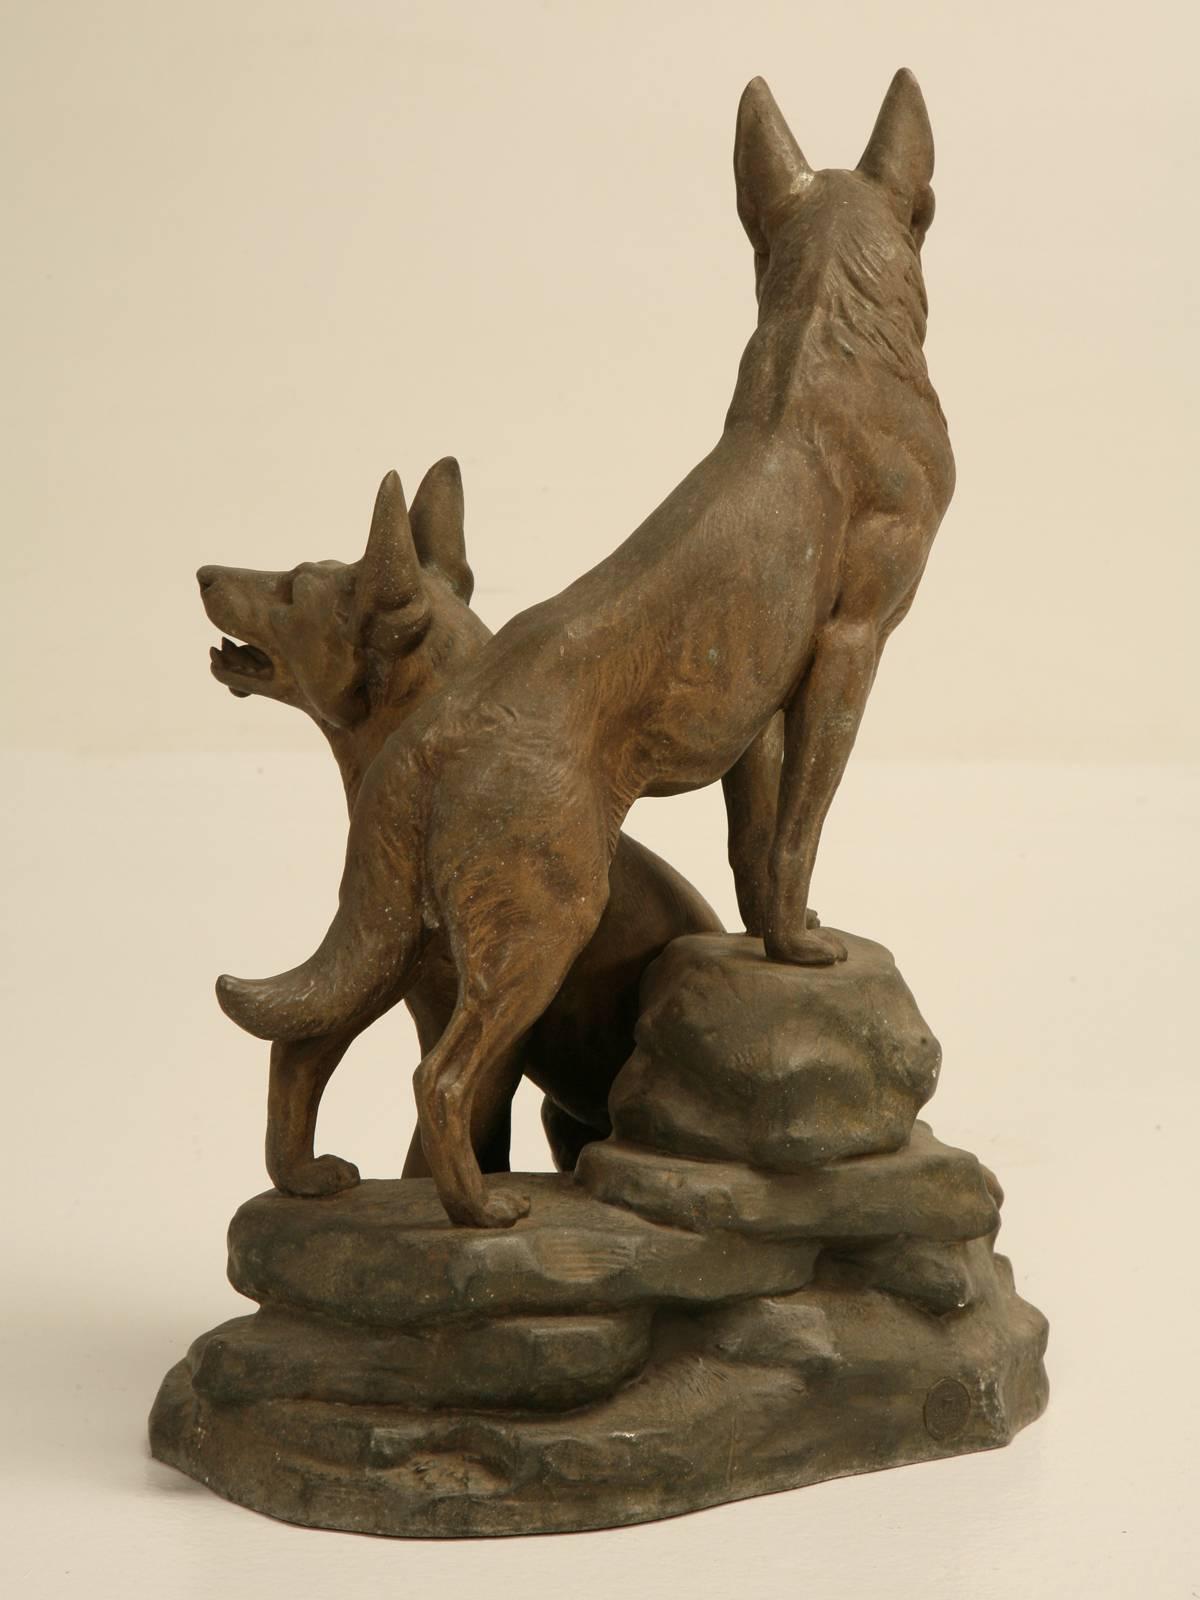 German Shepherd Dog Sculpture by Louis-Albert Carvin 1